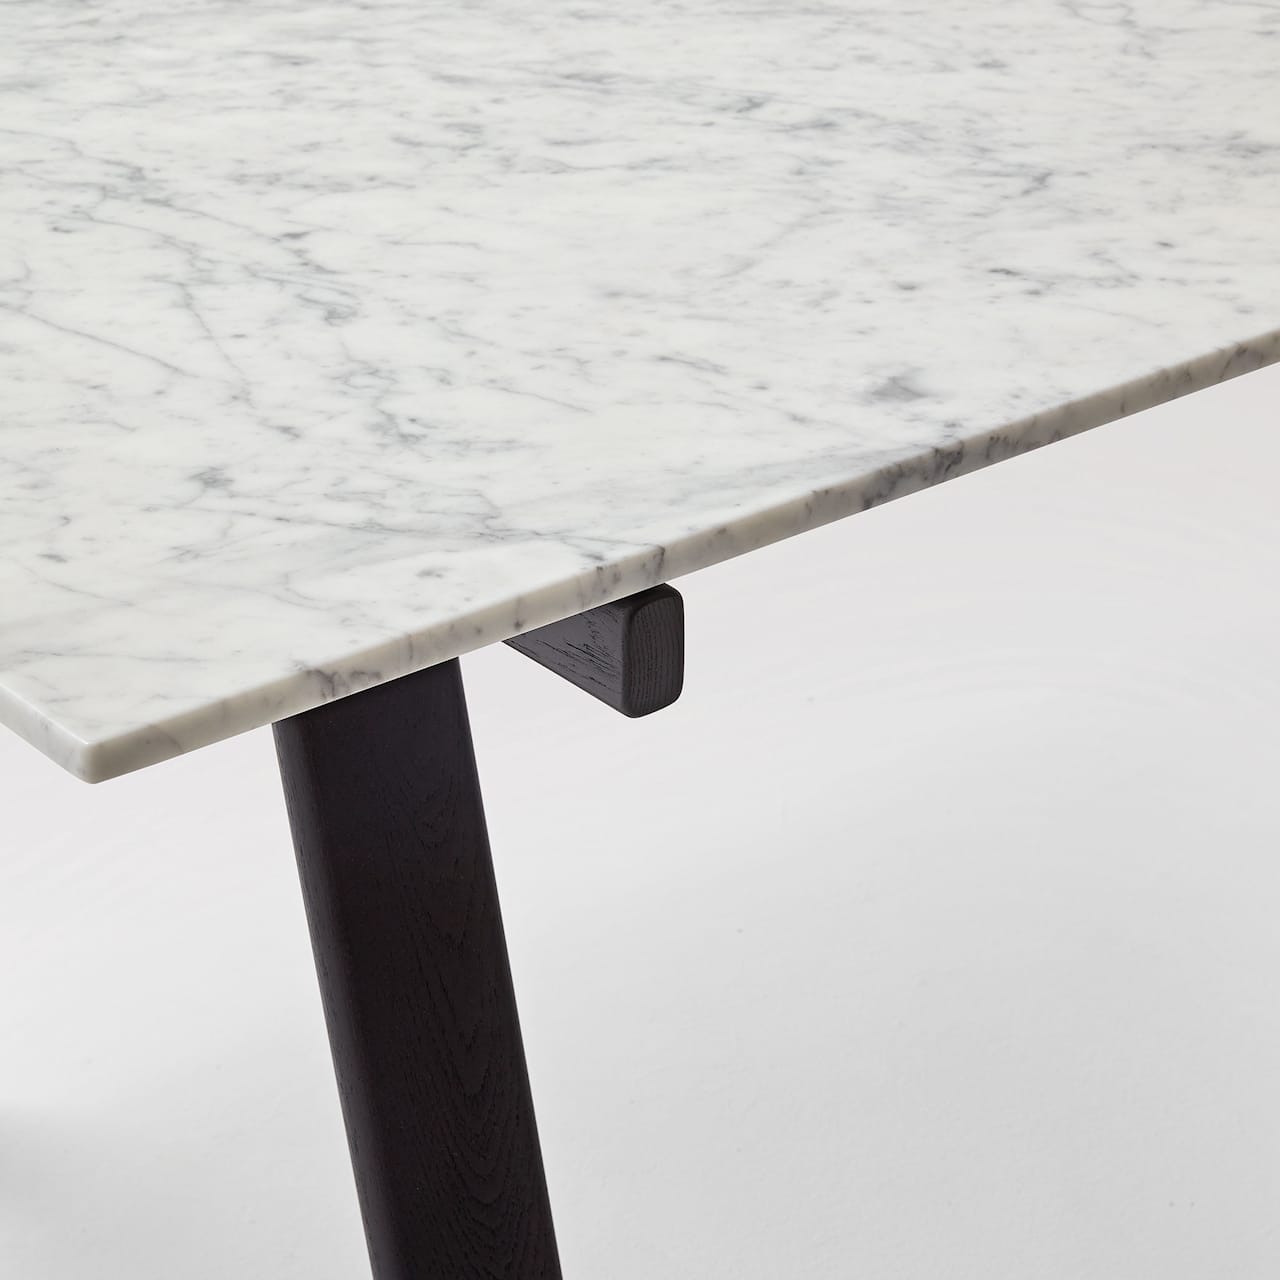 Ambrosiano Table 190 cm